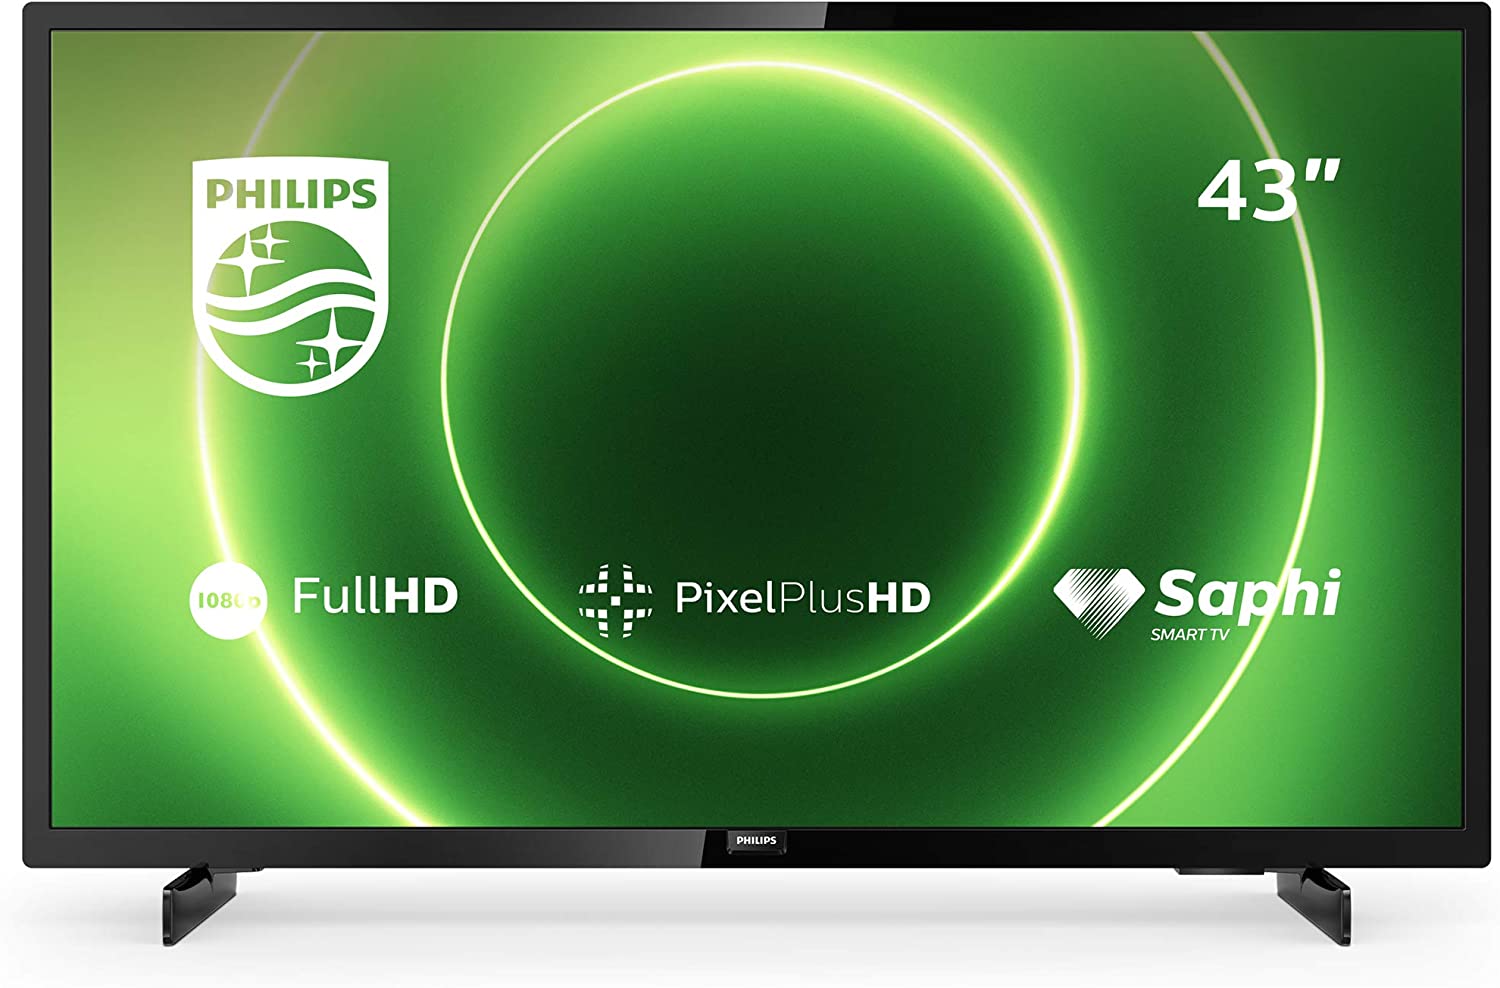 Philips 43 Zoll Fernseher, Full HD LED TV - Smart TV 43PFS6805/12